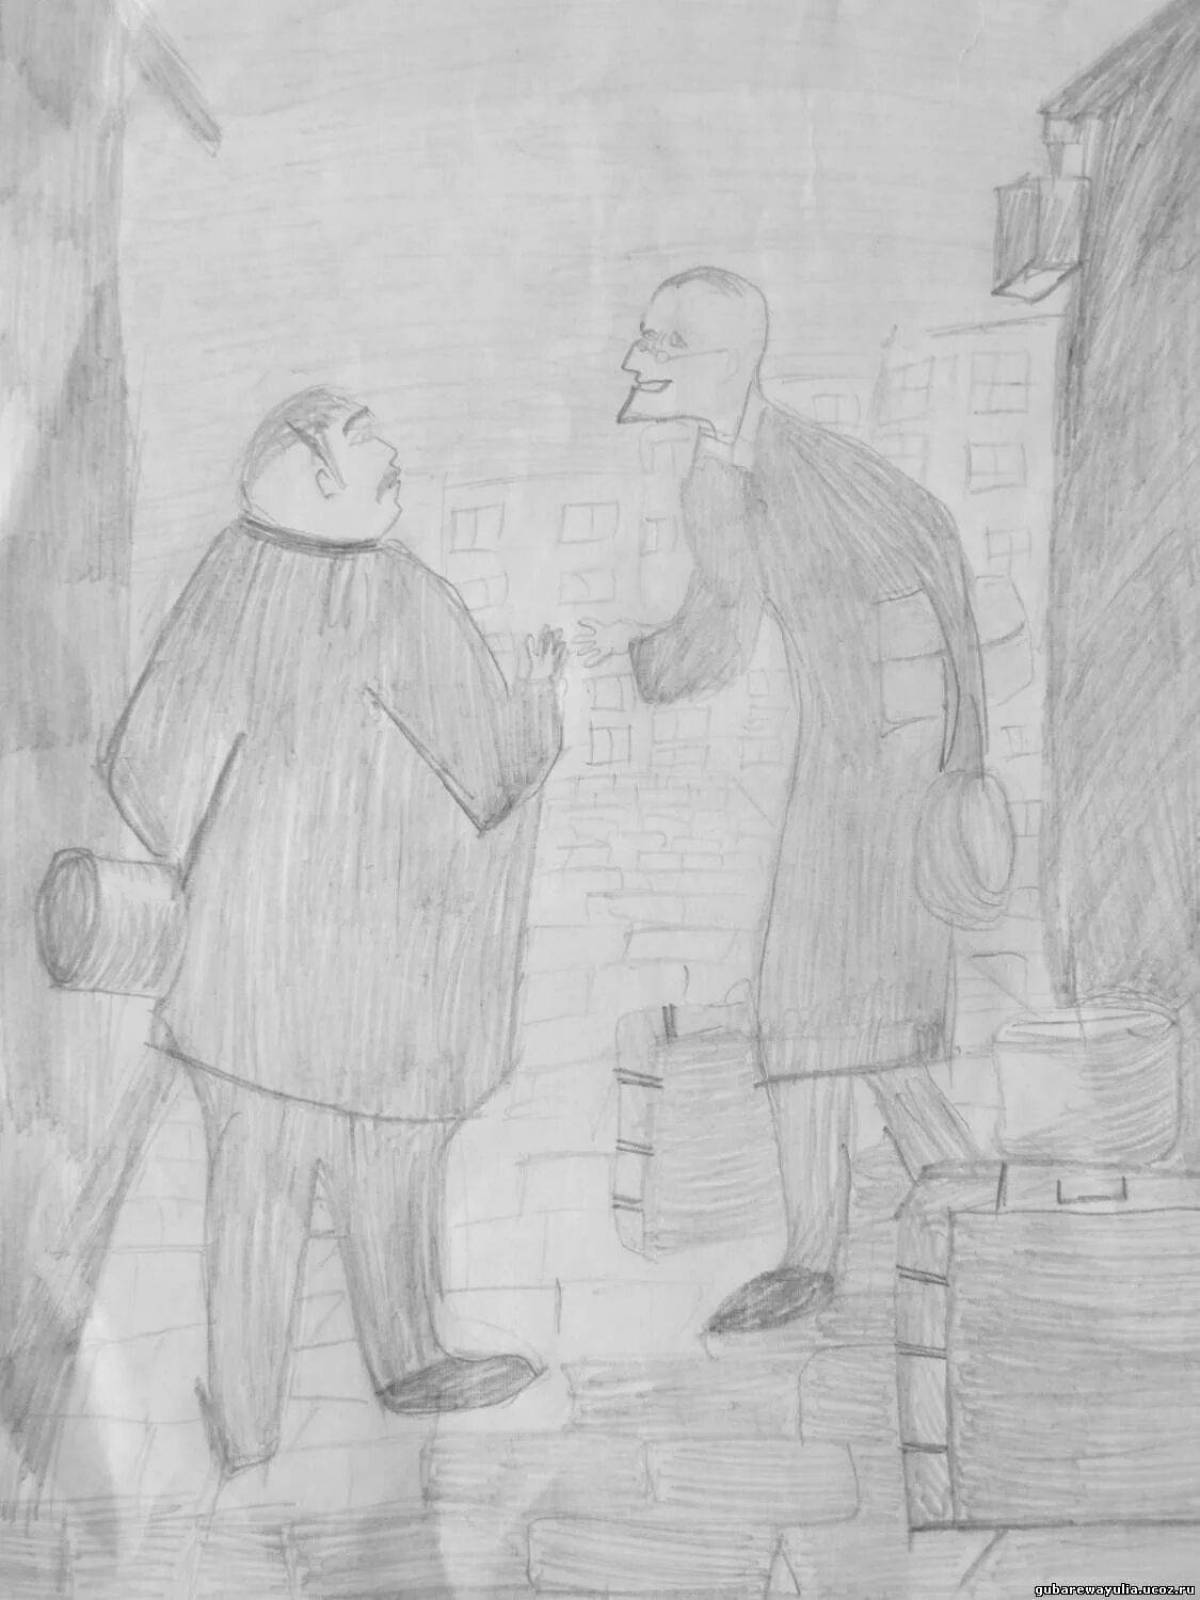 Иллюстрация к произведению Чехова толстый и тонкий